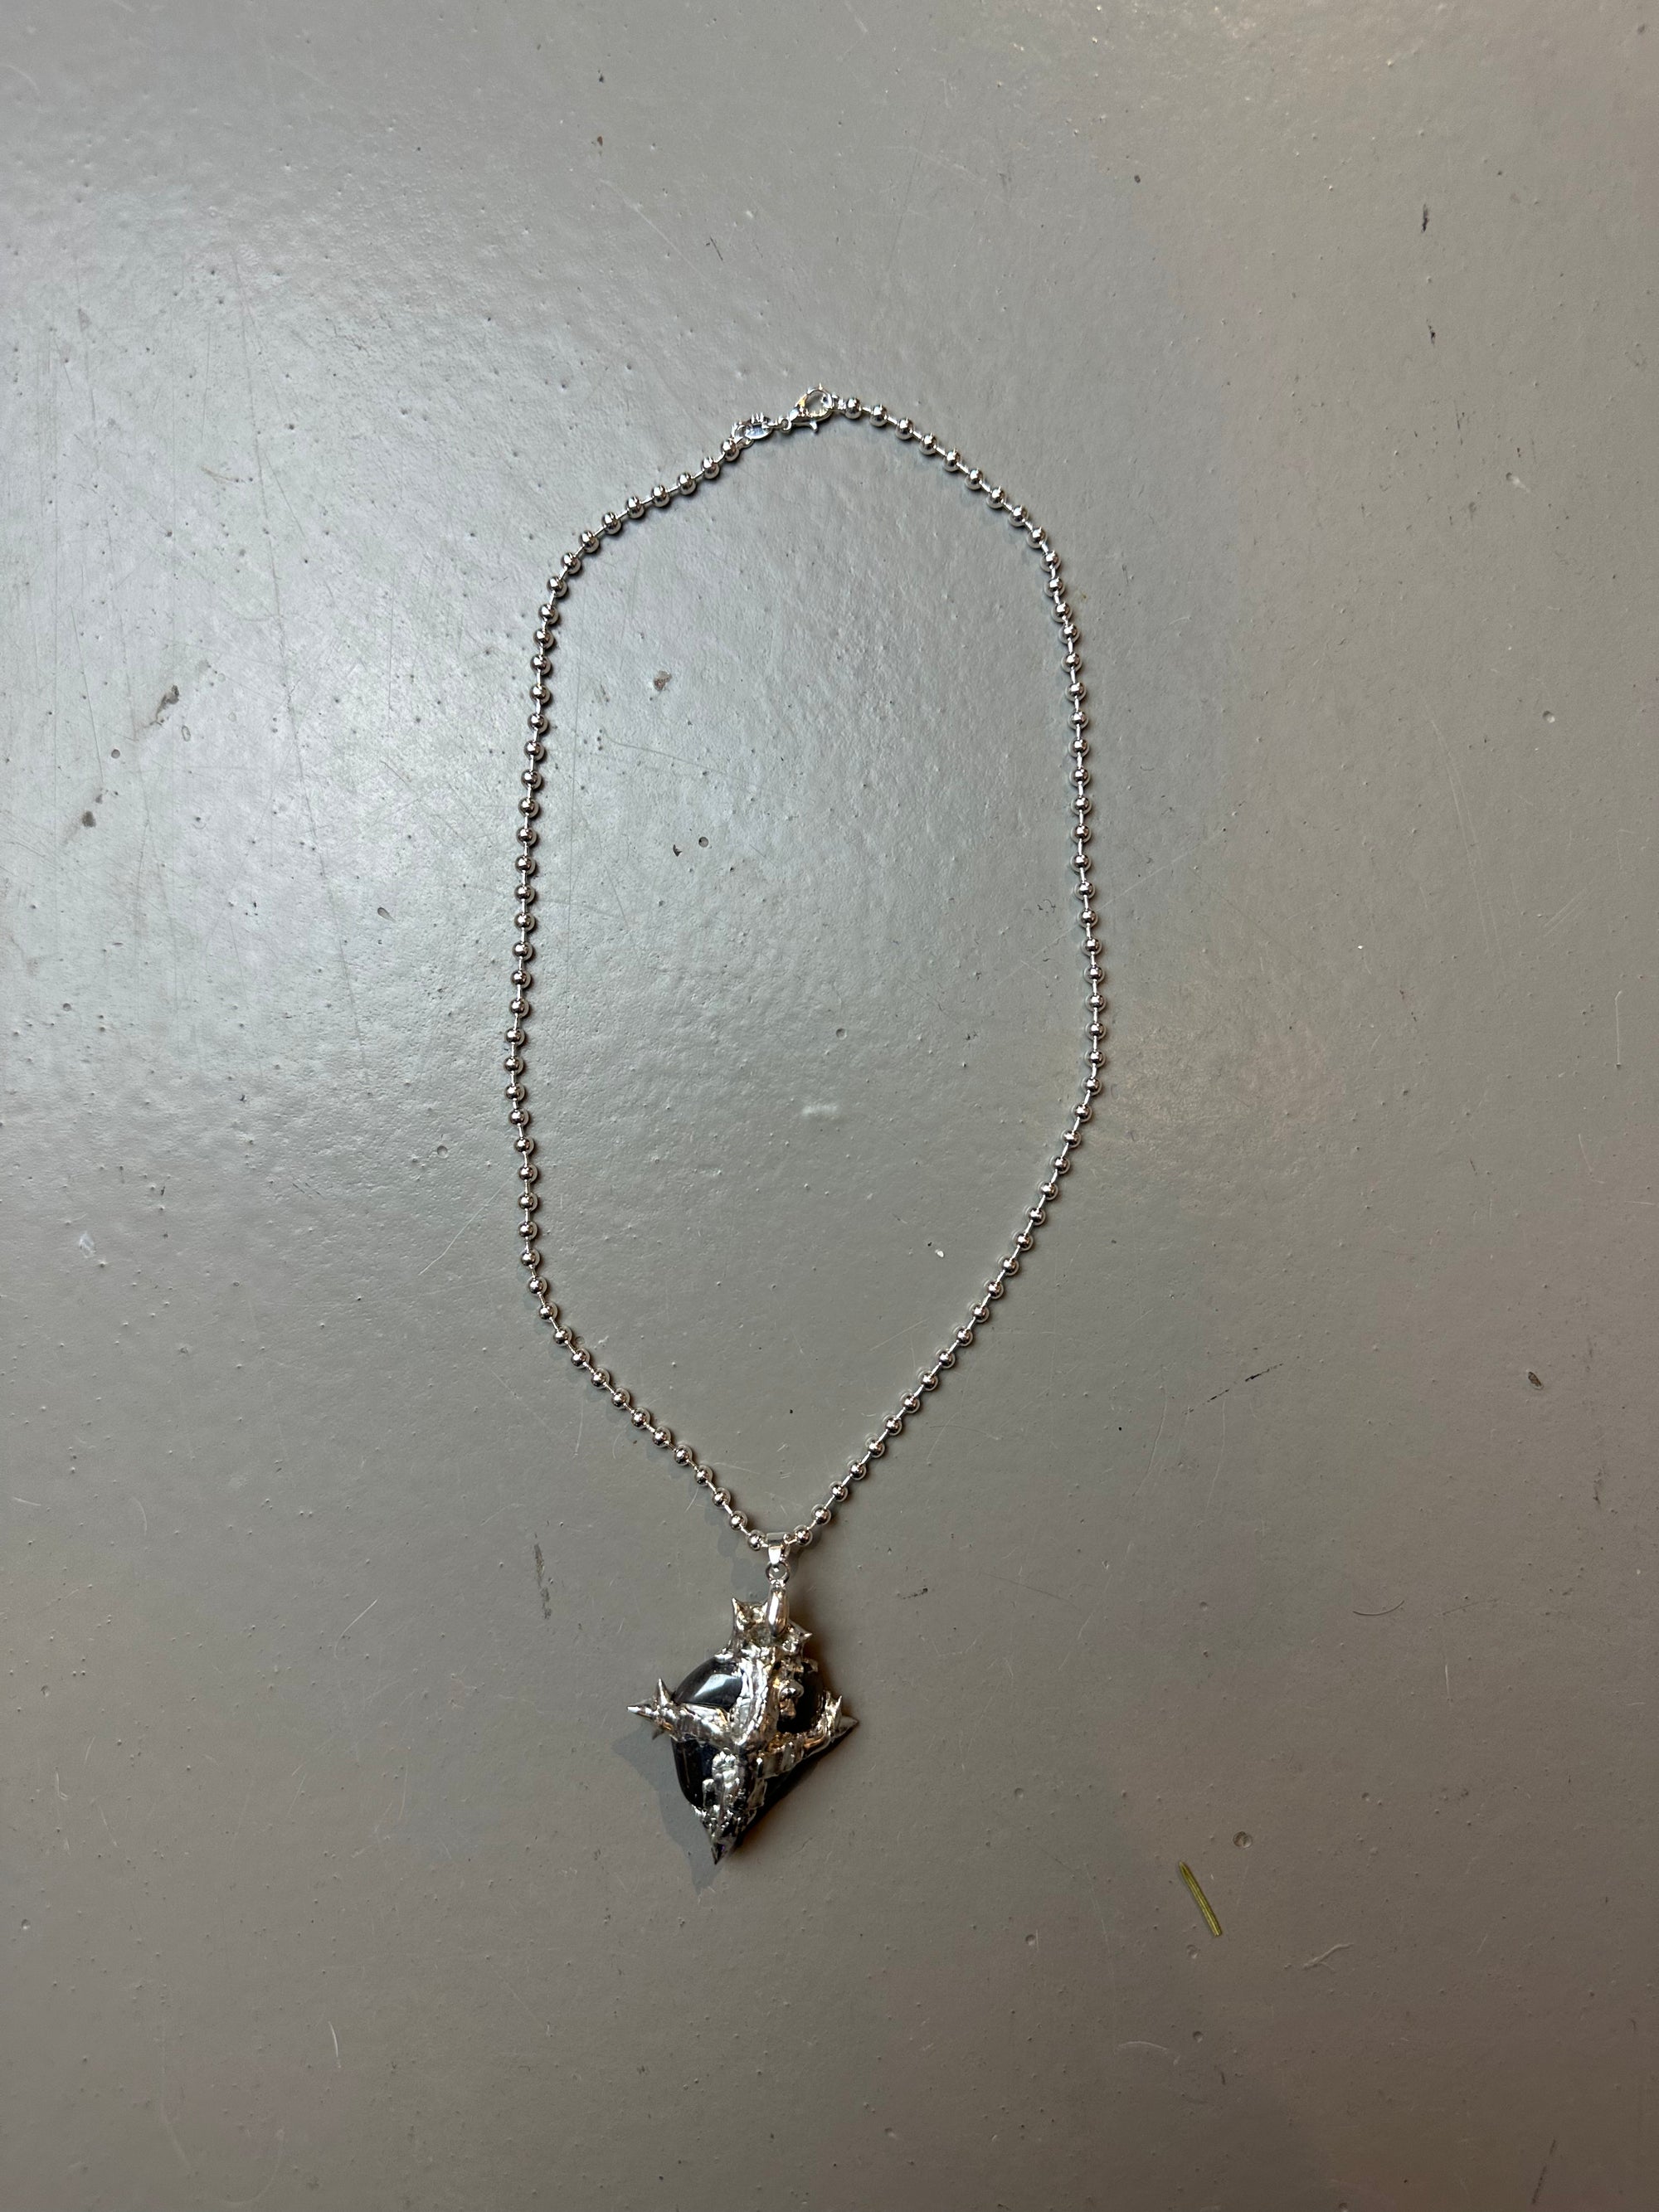 Produktbild von Xullery Hematite Necklace vor einem grauen Hintergrund.